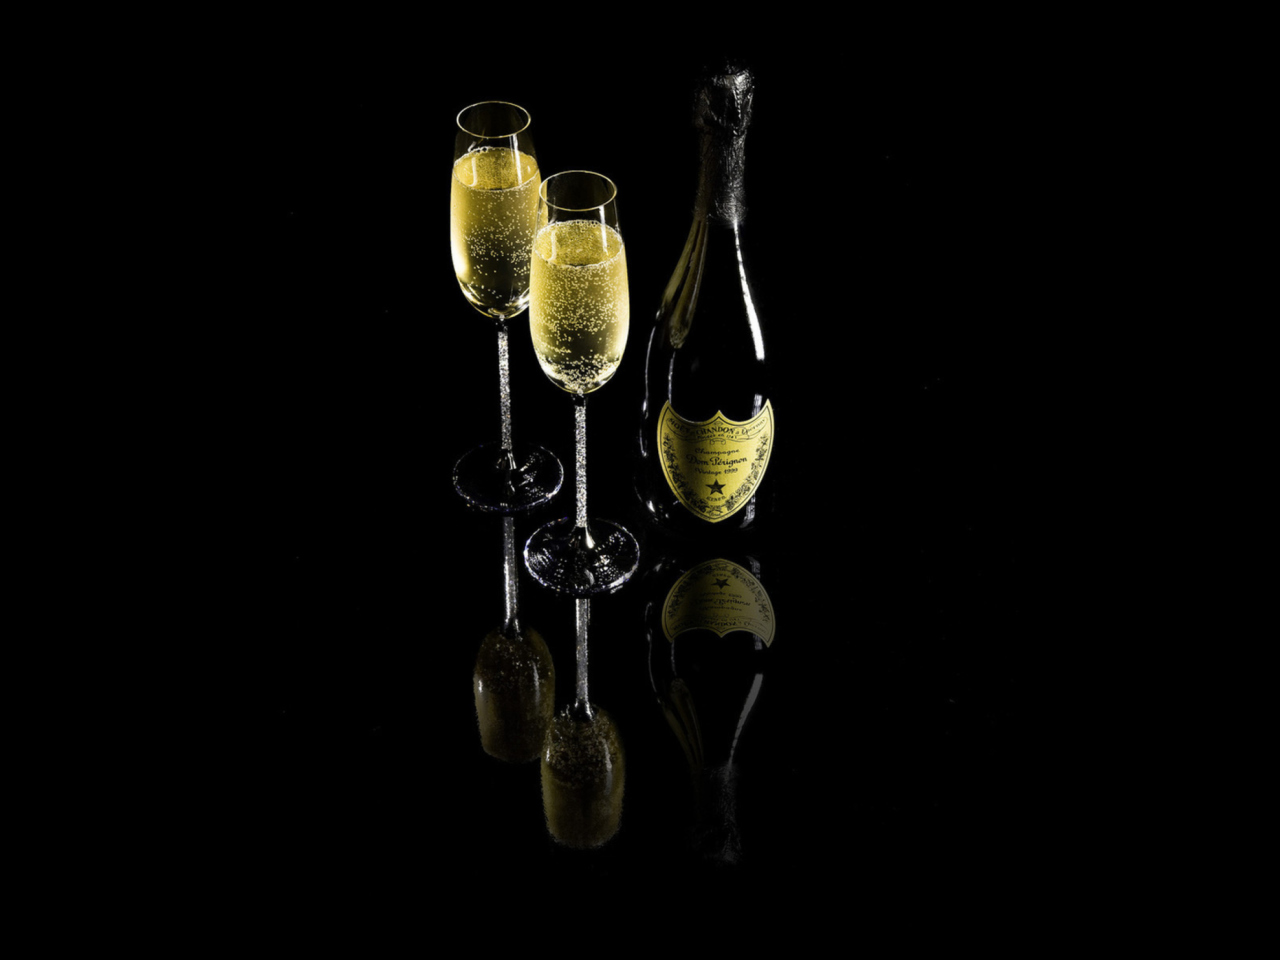 Sfondi Dom Perignon Champagne 1280x960